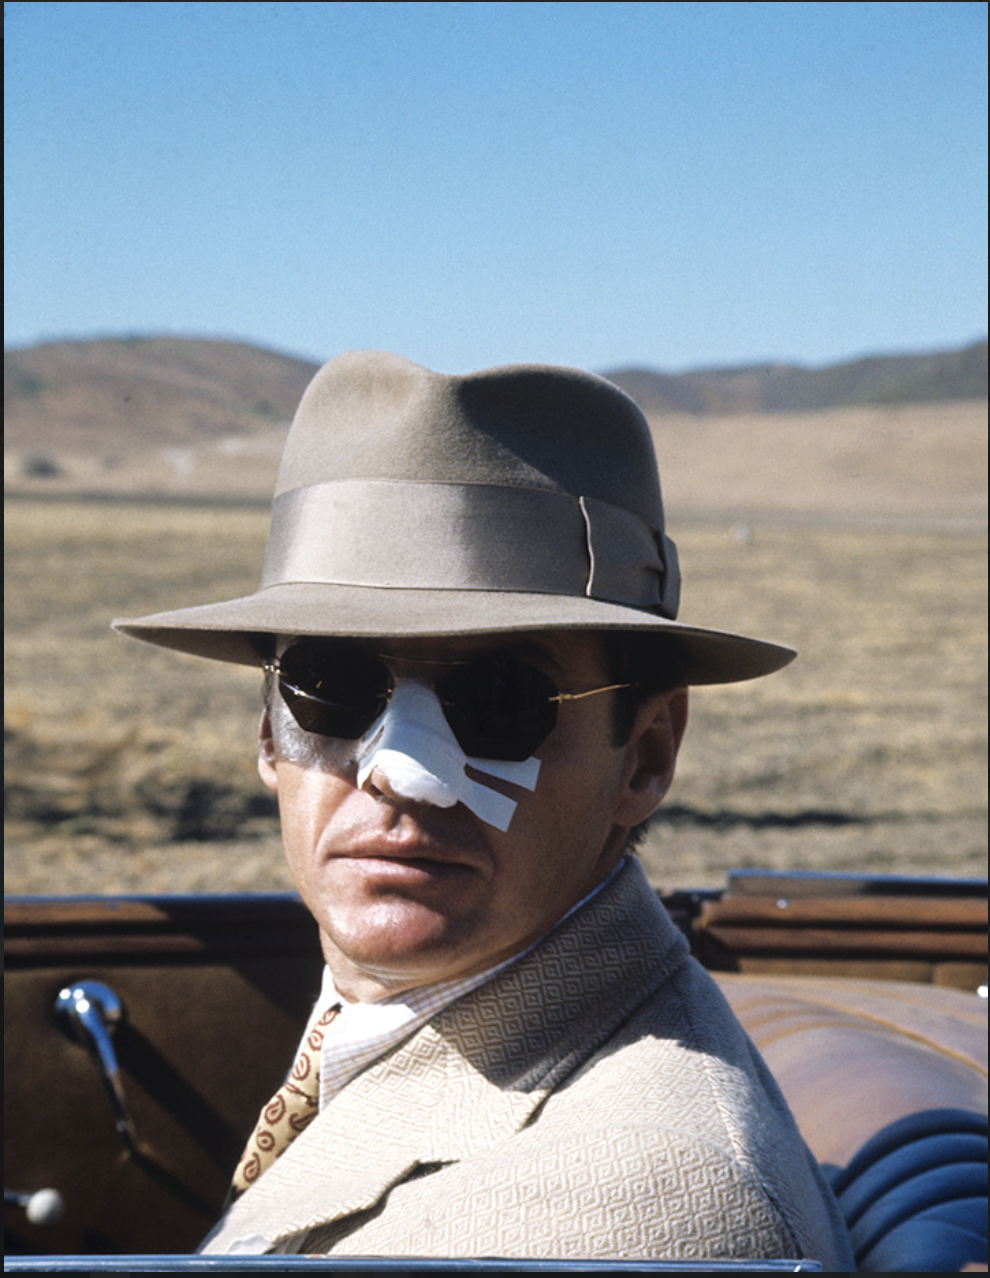 Una delle foto esposte alla mostra 'Hollywood'.Jack Nicholson nei panni di Jack Gittes in Chinatown di Roman Polanski in una foto di Steve Schapiro, Los Angeles 1974 ©Steve Schapiro